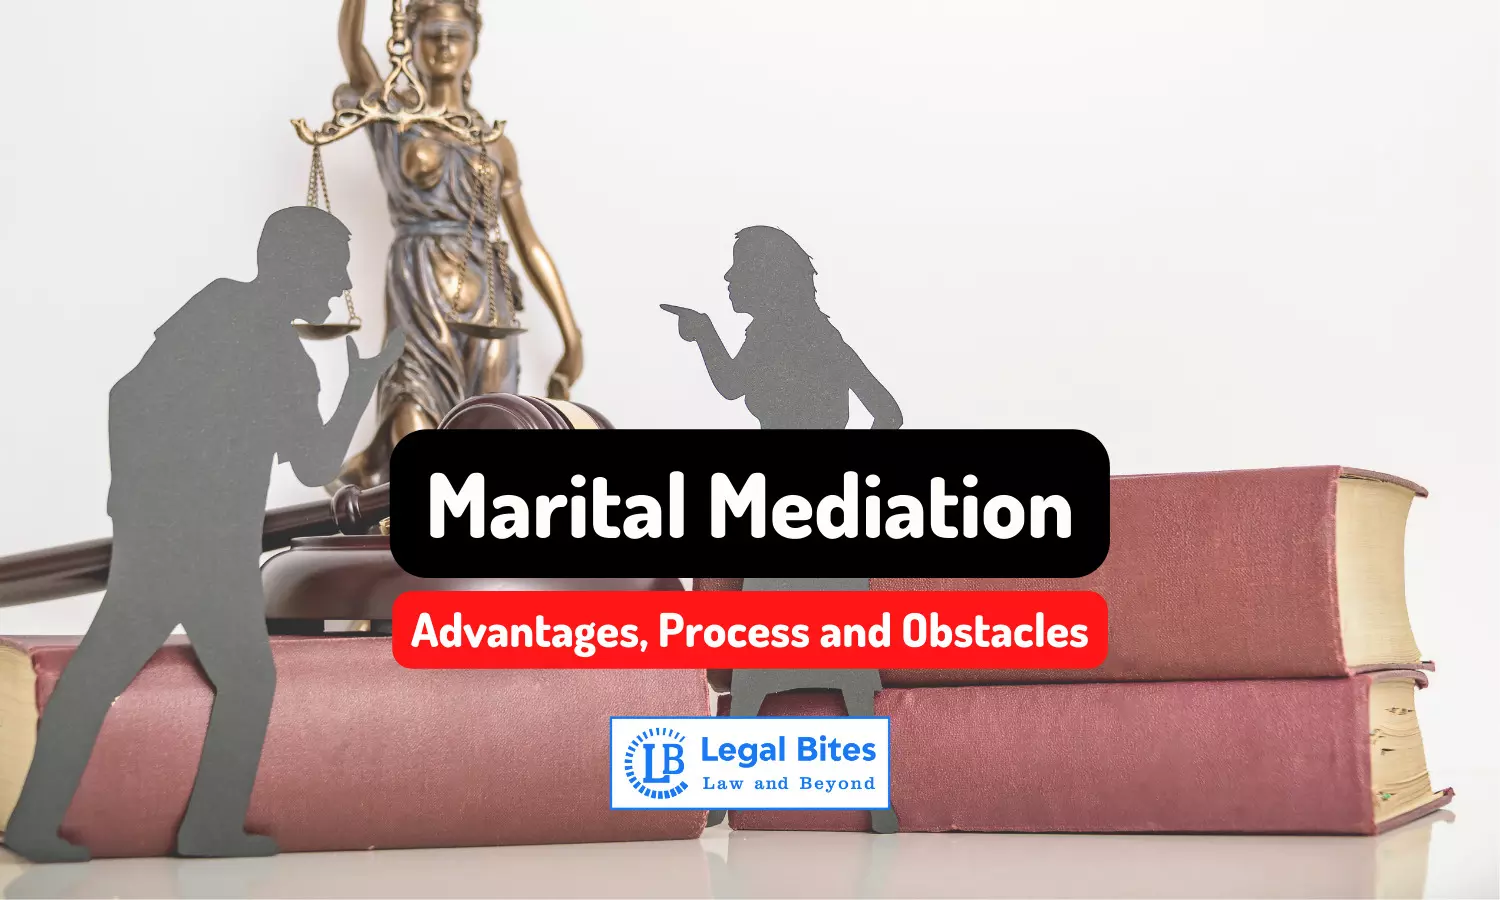 Marital Mediation: Advantages, Process and Obstacles